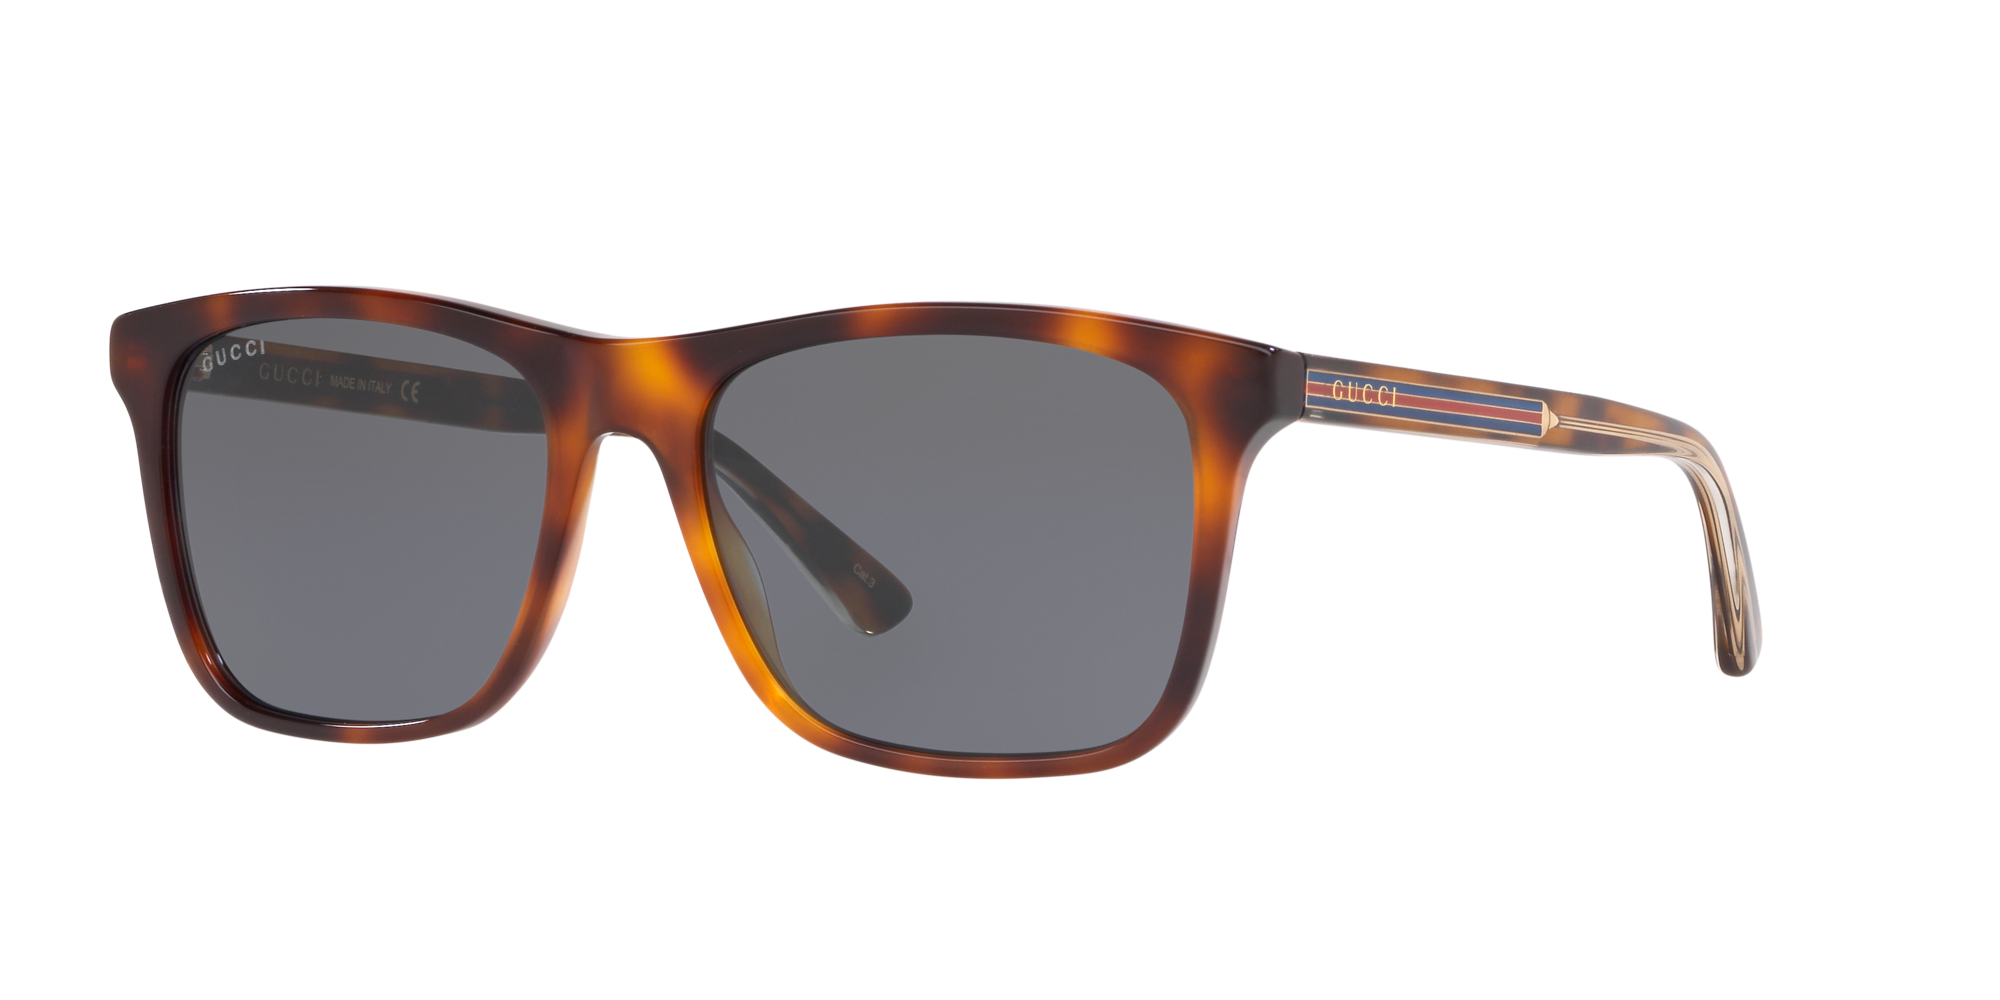 century 21 gucci sunglasses